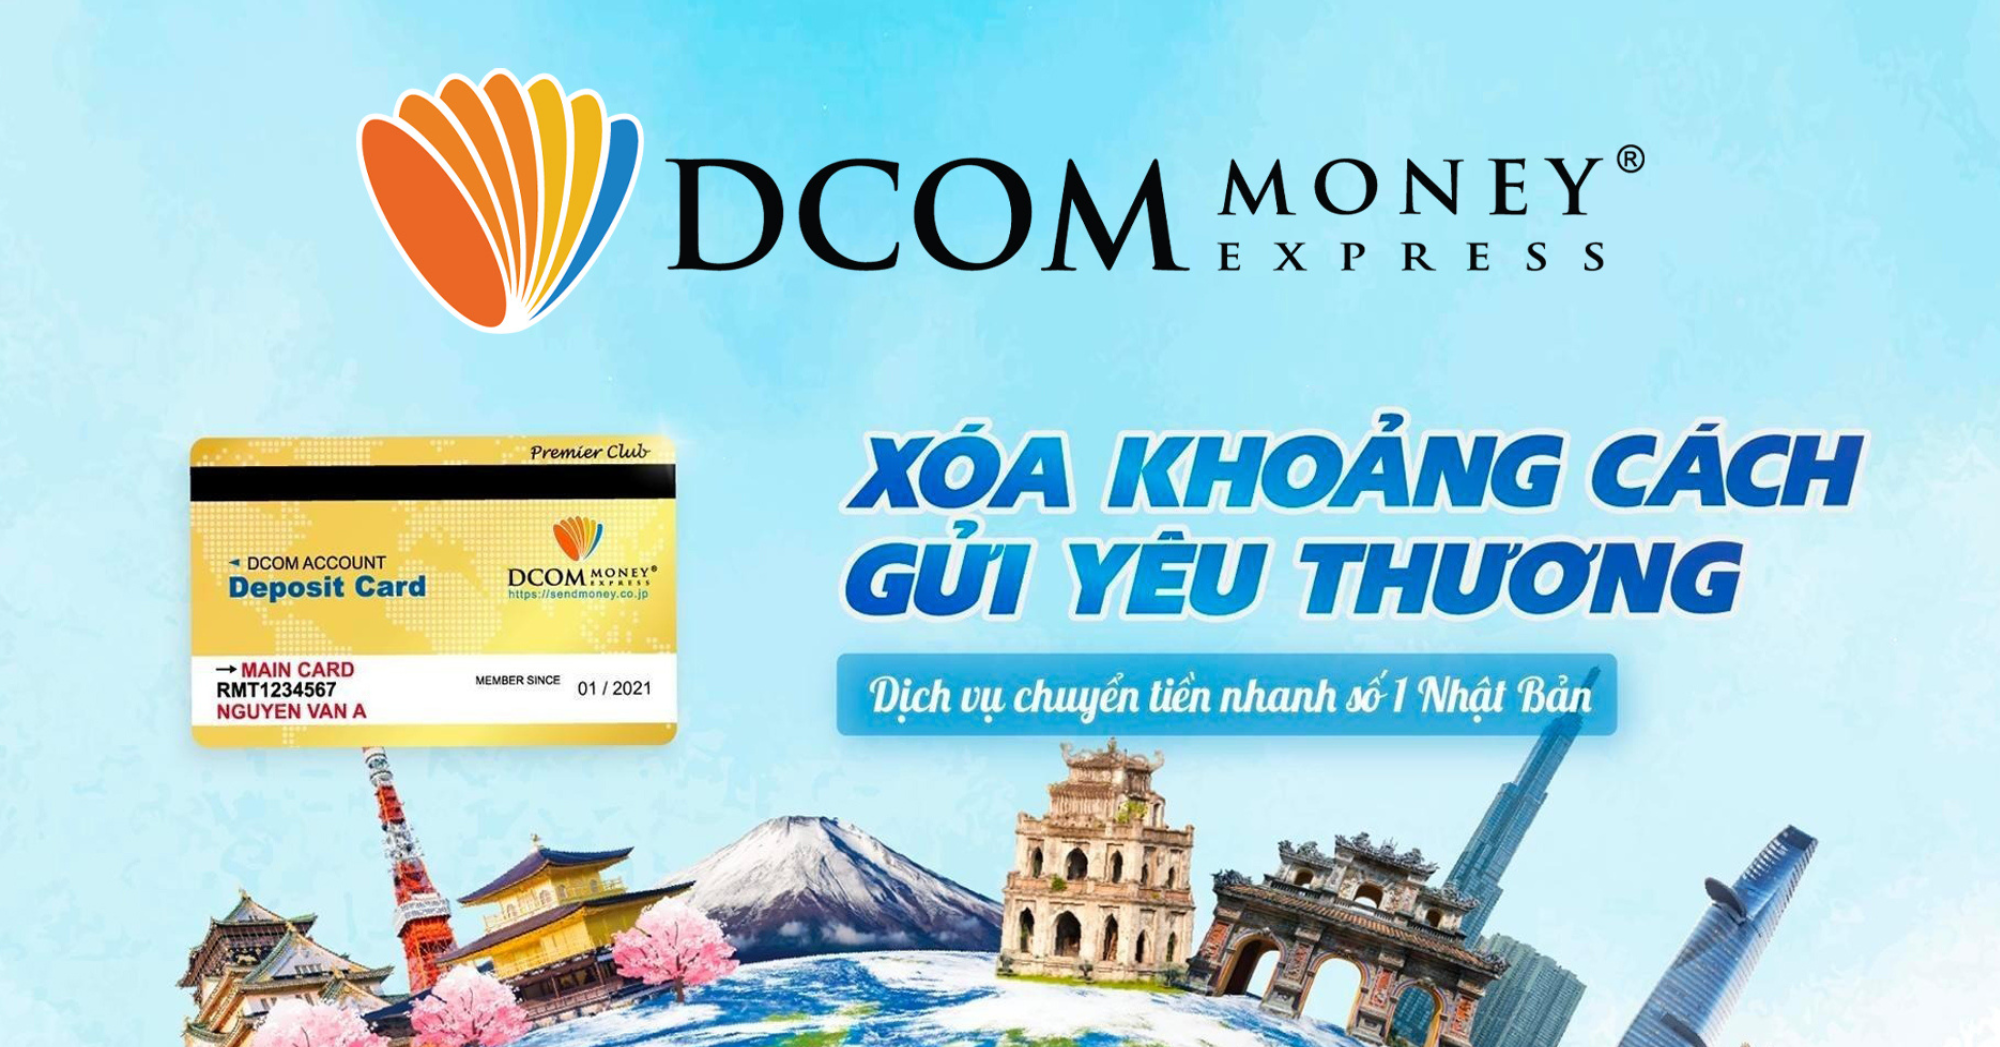 Nhà tài trợ DCOM Money Express - Dịch vụ chuyển tiền số 1 Nhật Bản